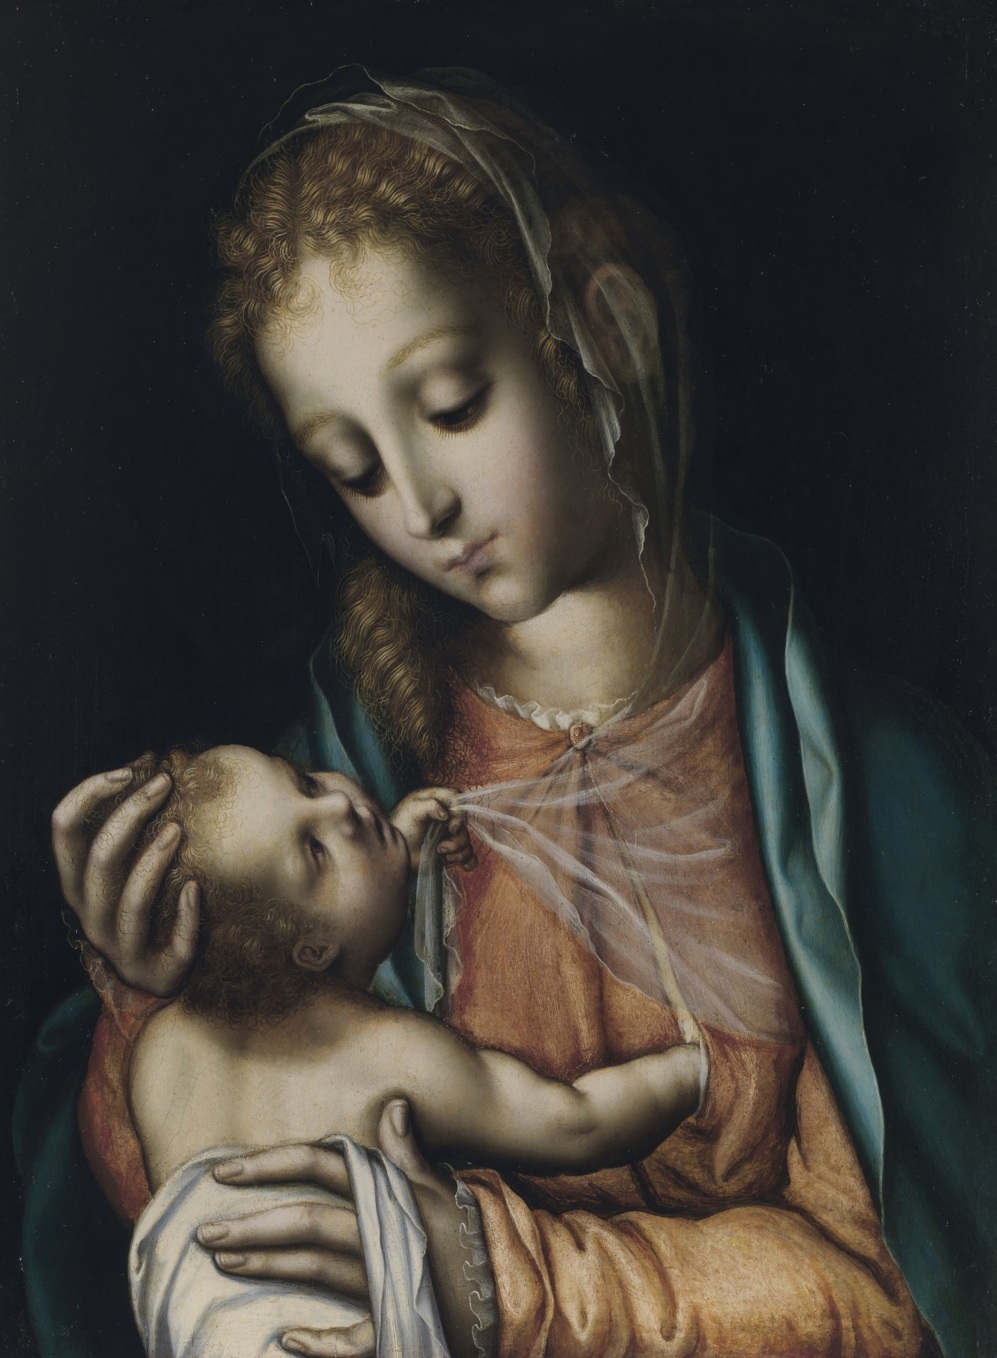 La Virgen de la Leche, por Luis de Morales, expuesta en El Prado